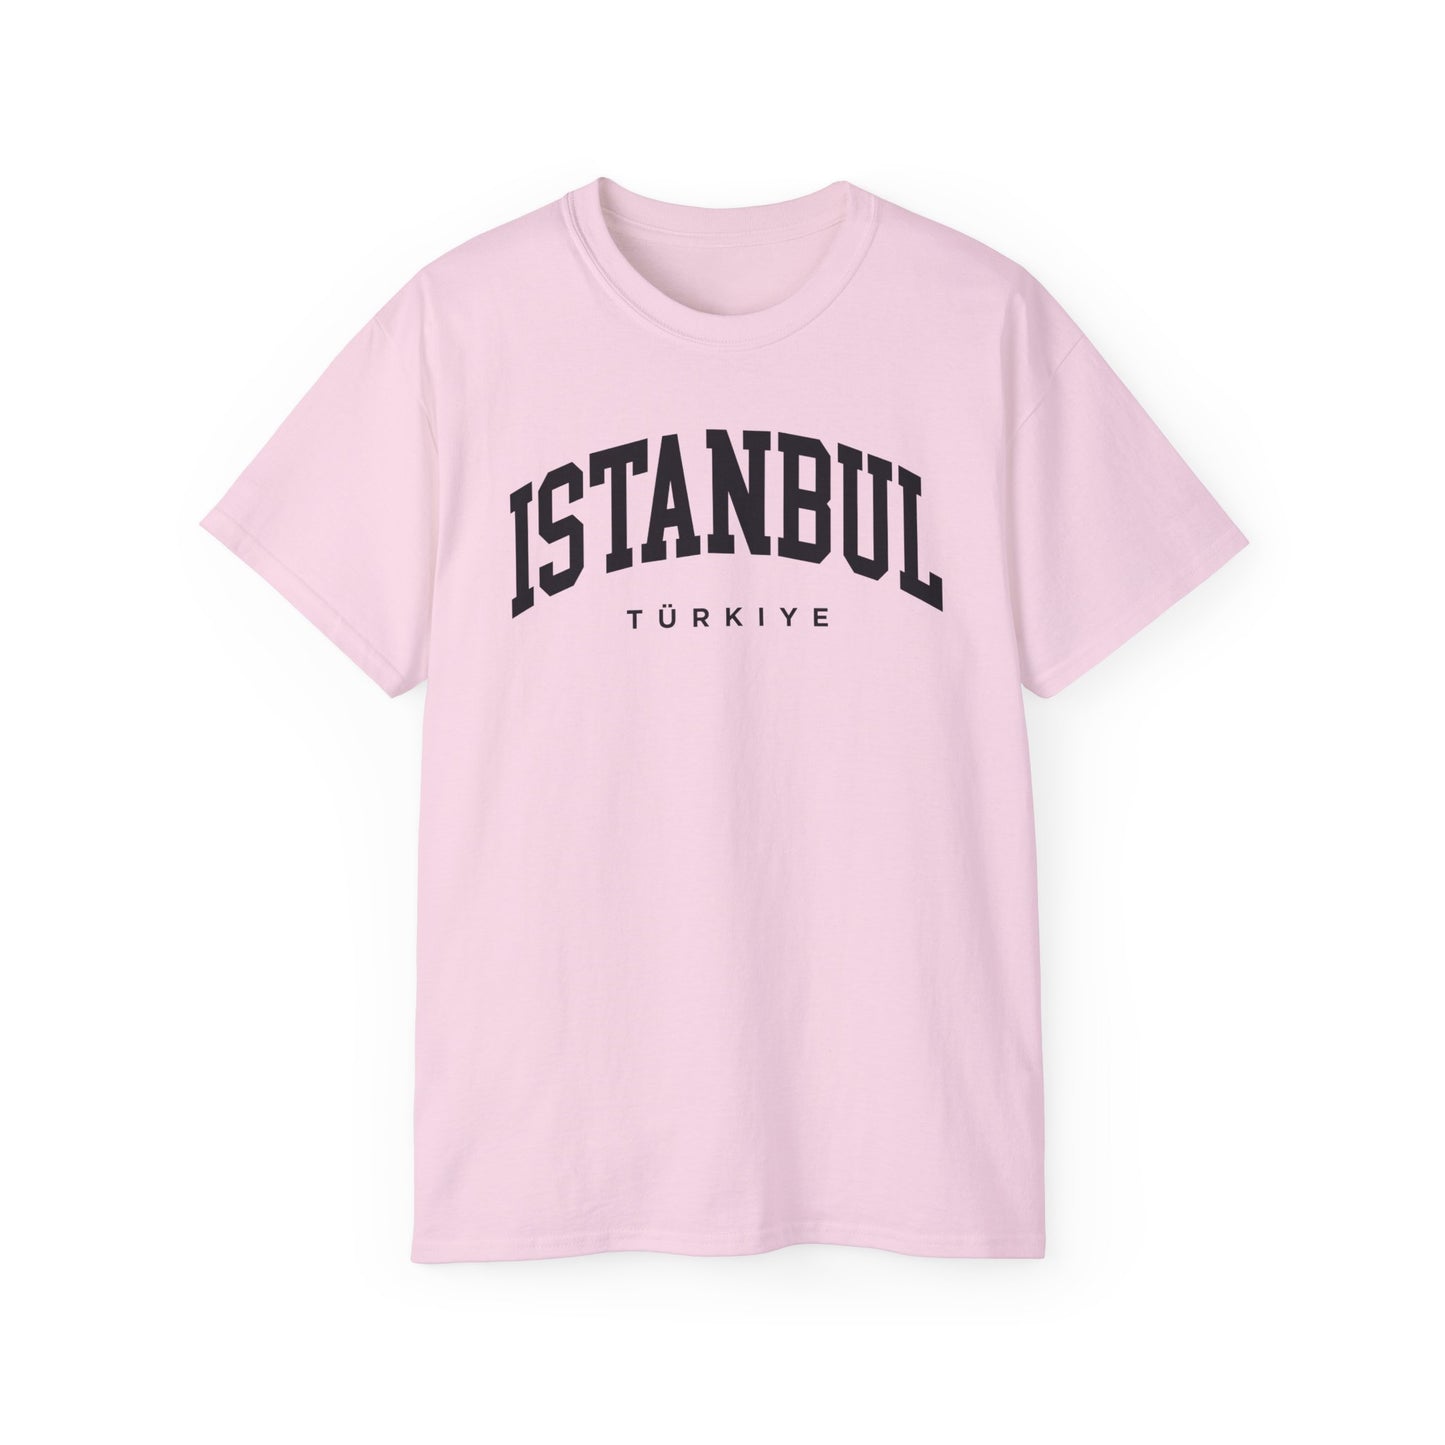 Istanbul Turkey Tee